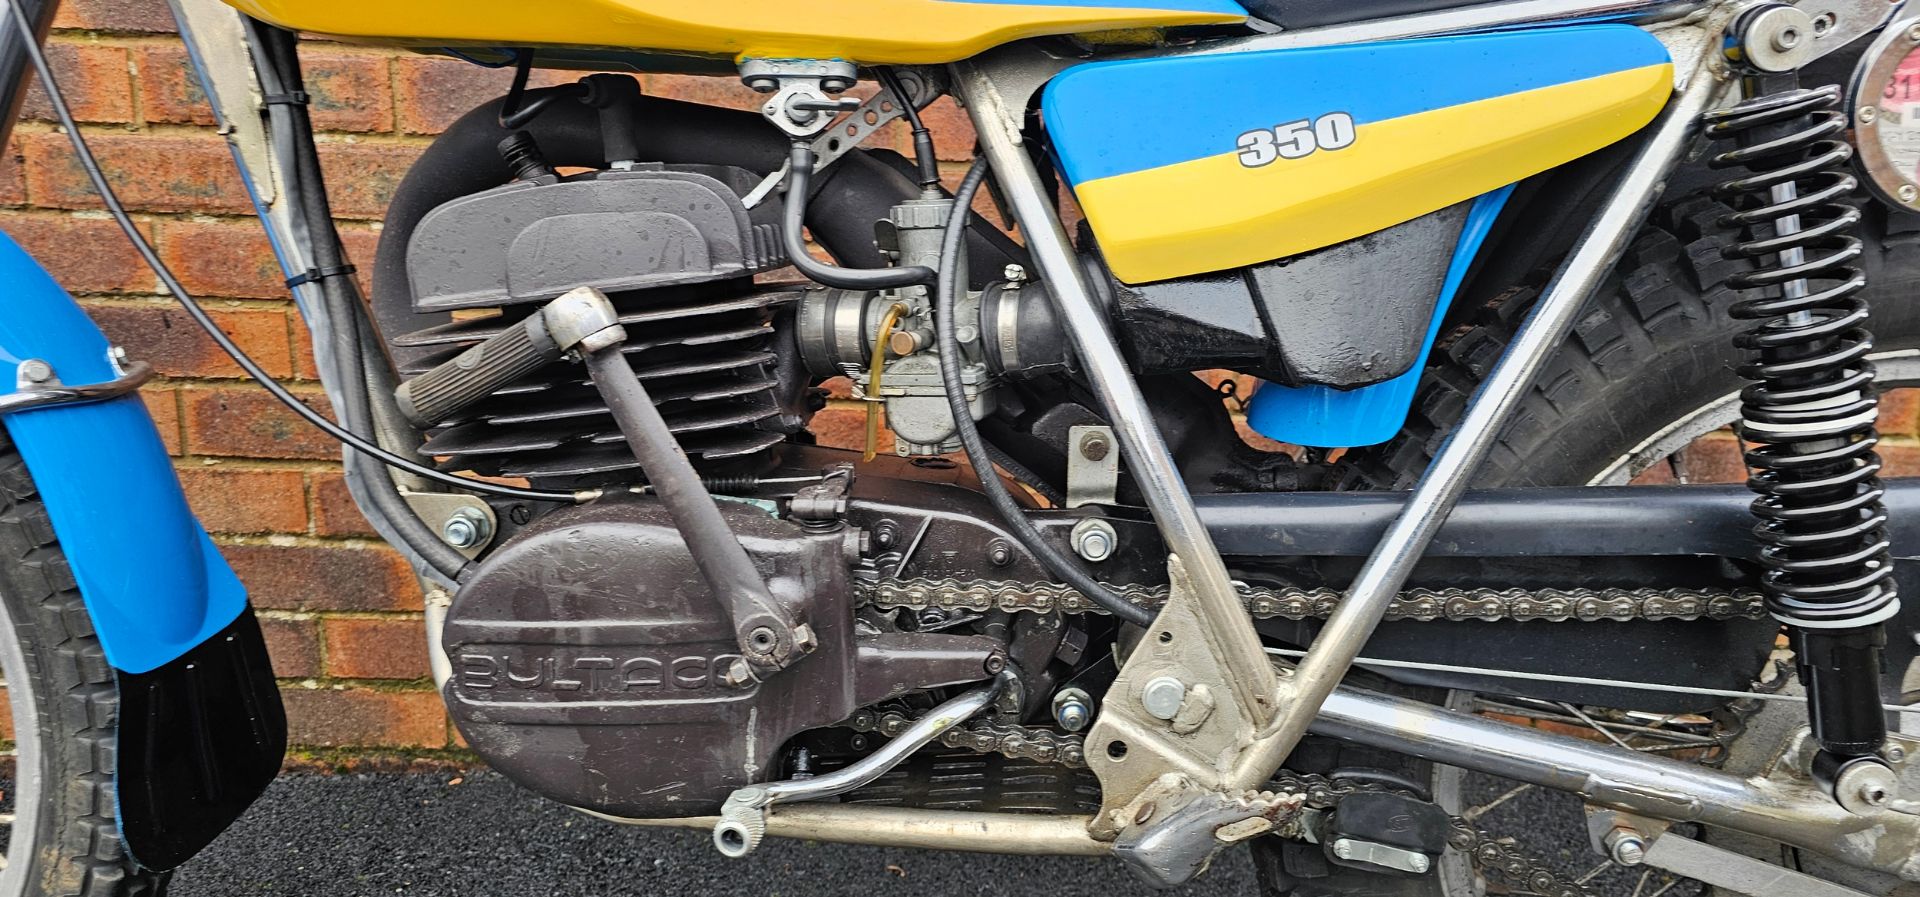 1978 Bultaco Sherpa T, 340cc. Registration number YGY 254S. Frame number JB 19900686. Engine - Bild 9 aus 13